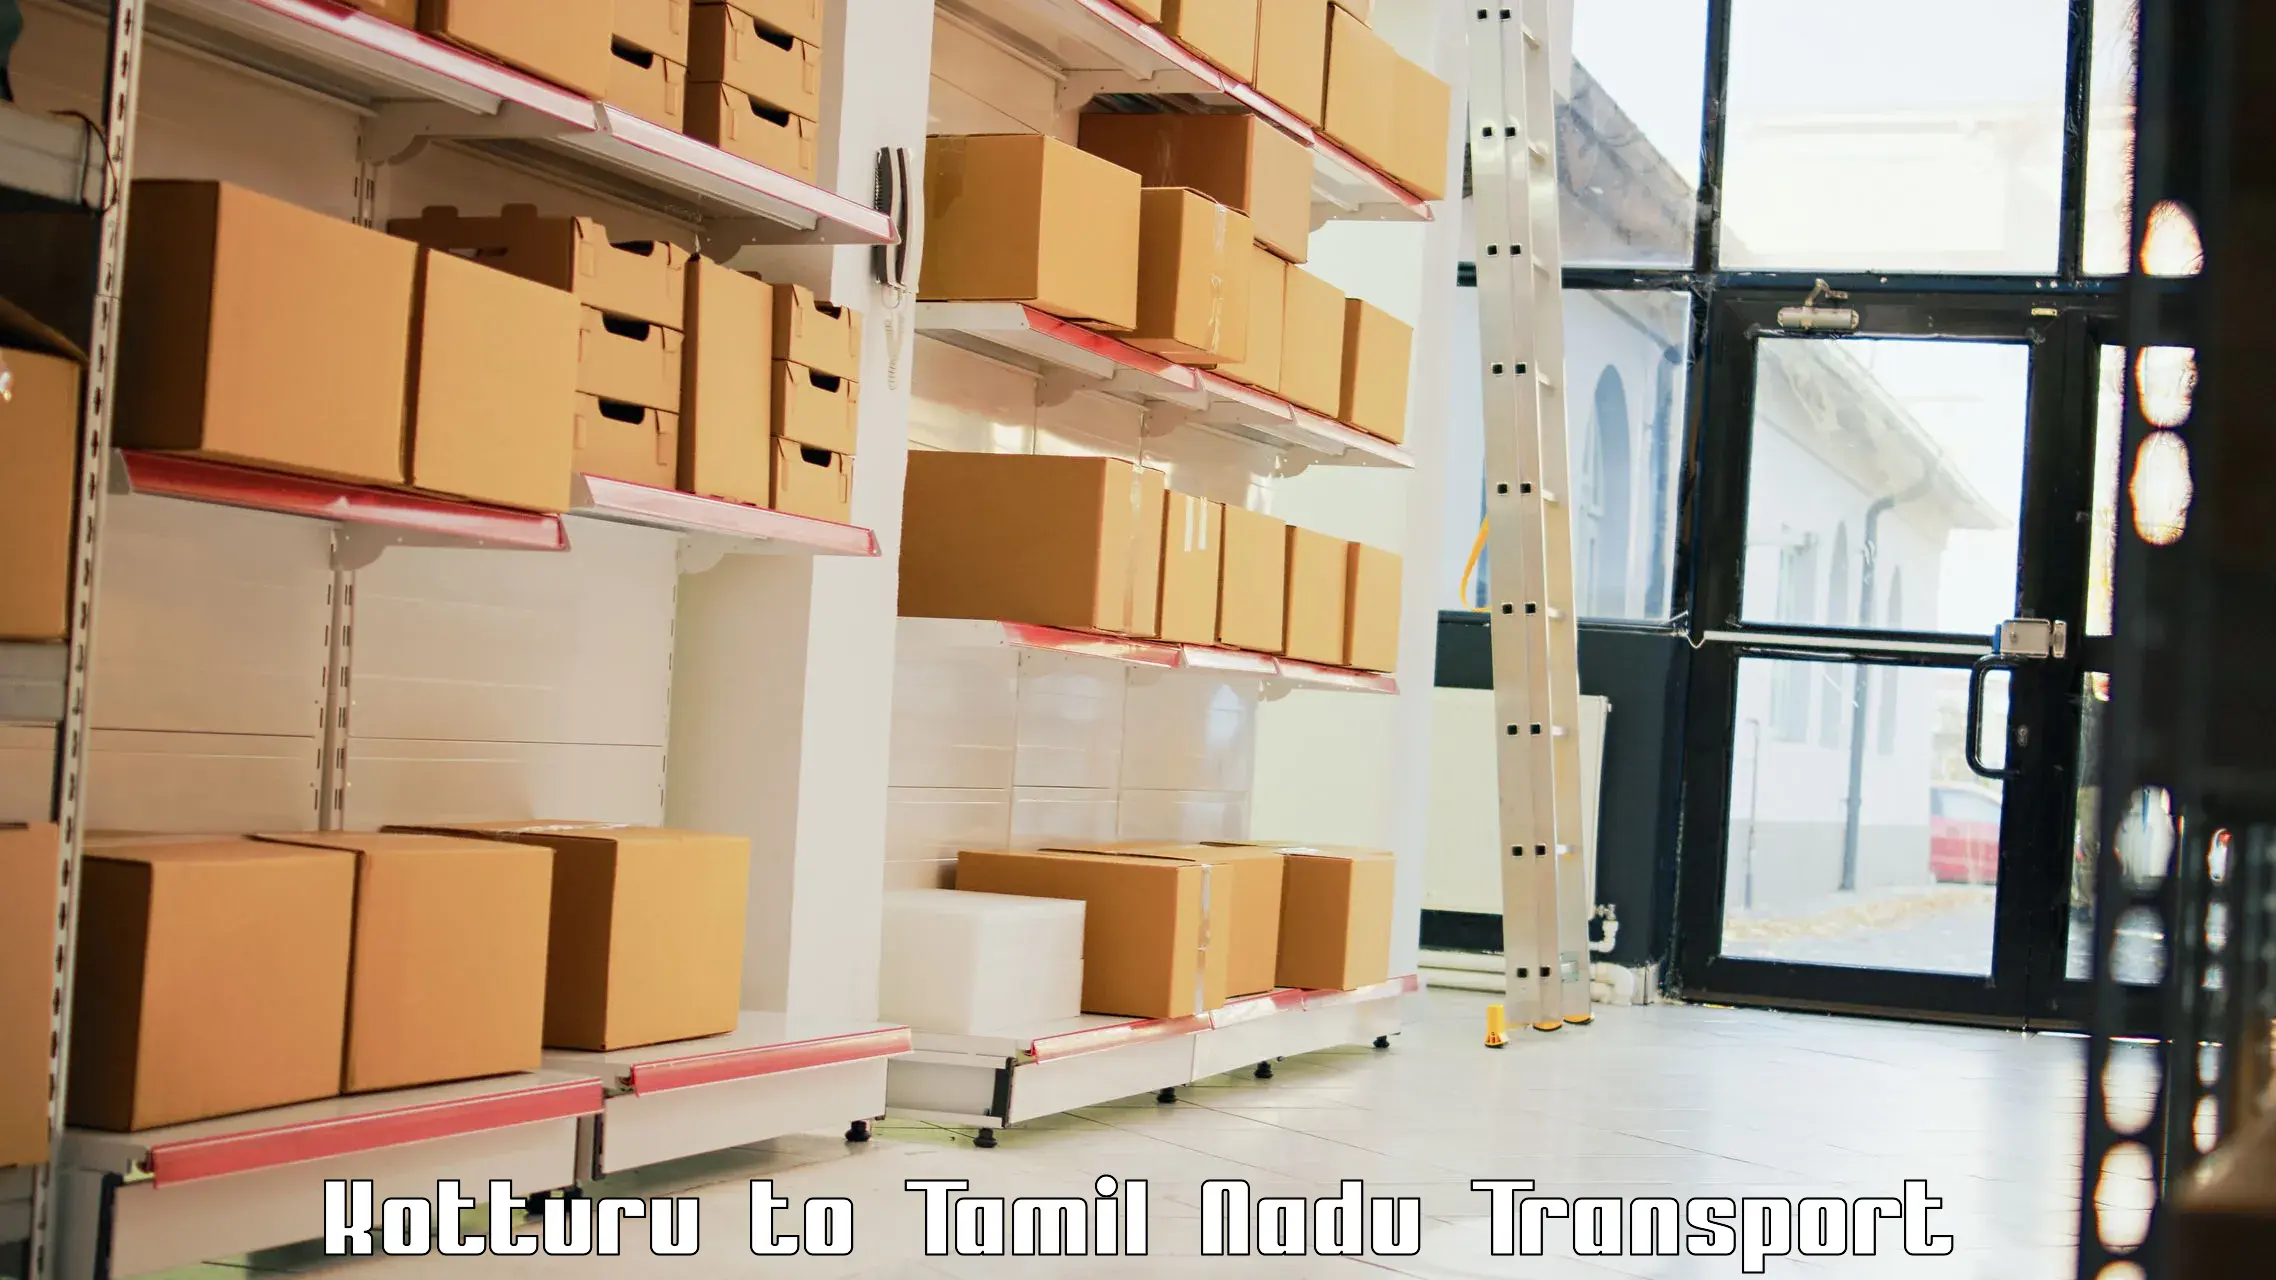 Online transport service in Kotturu to Tiruvallur